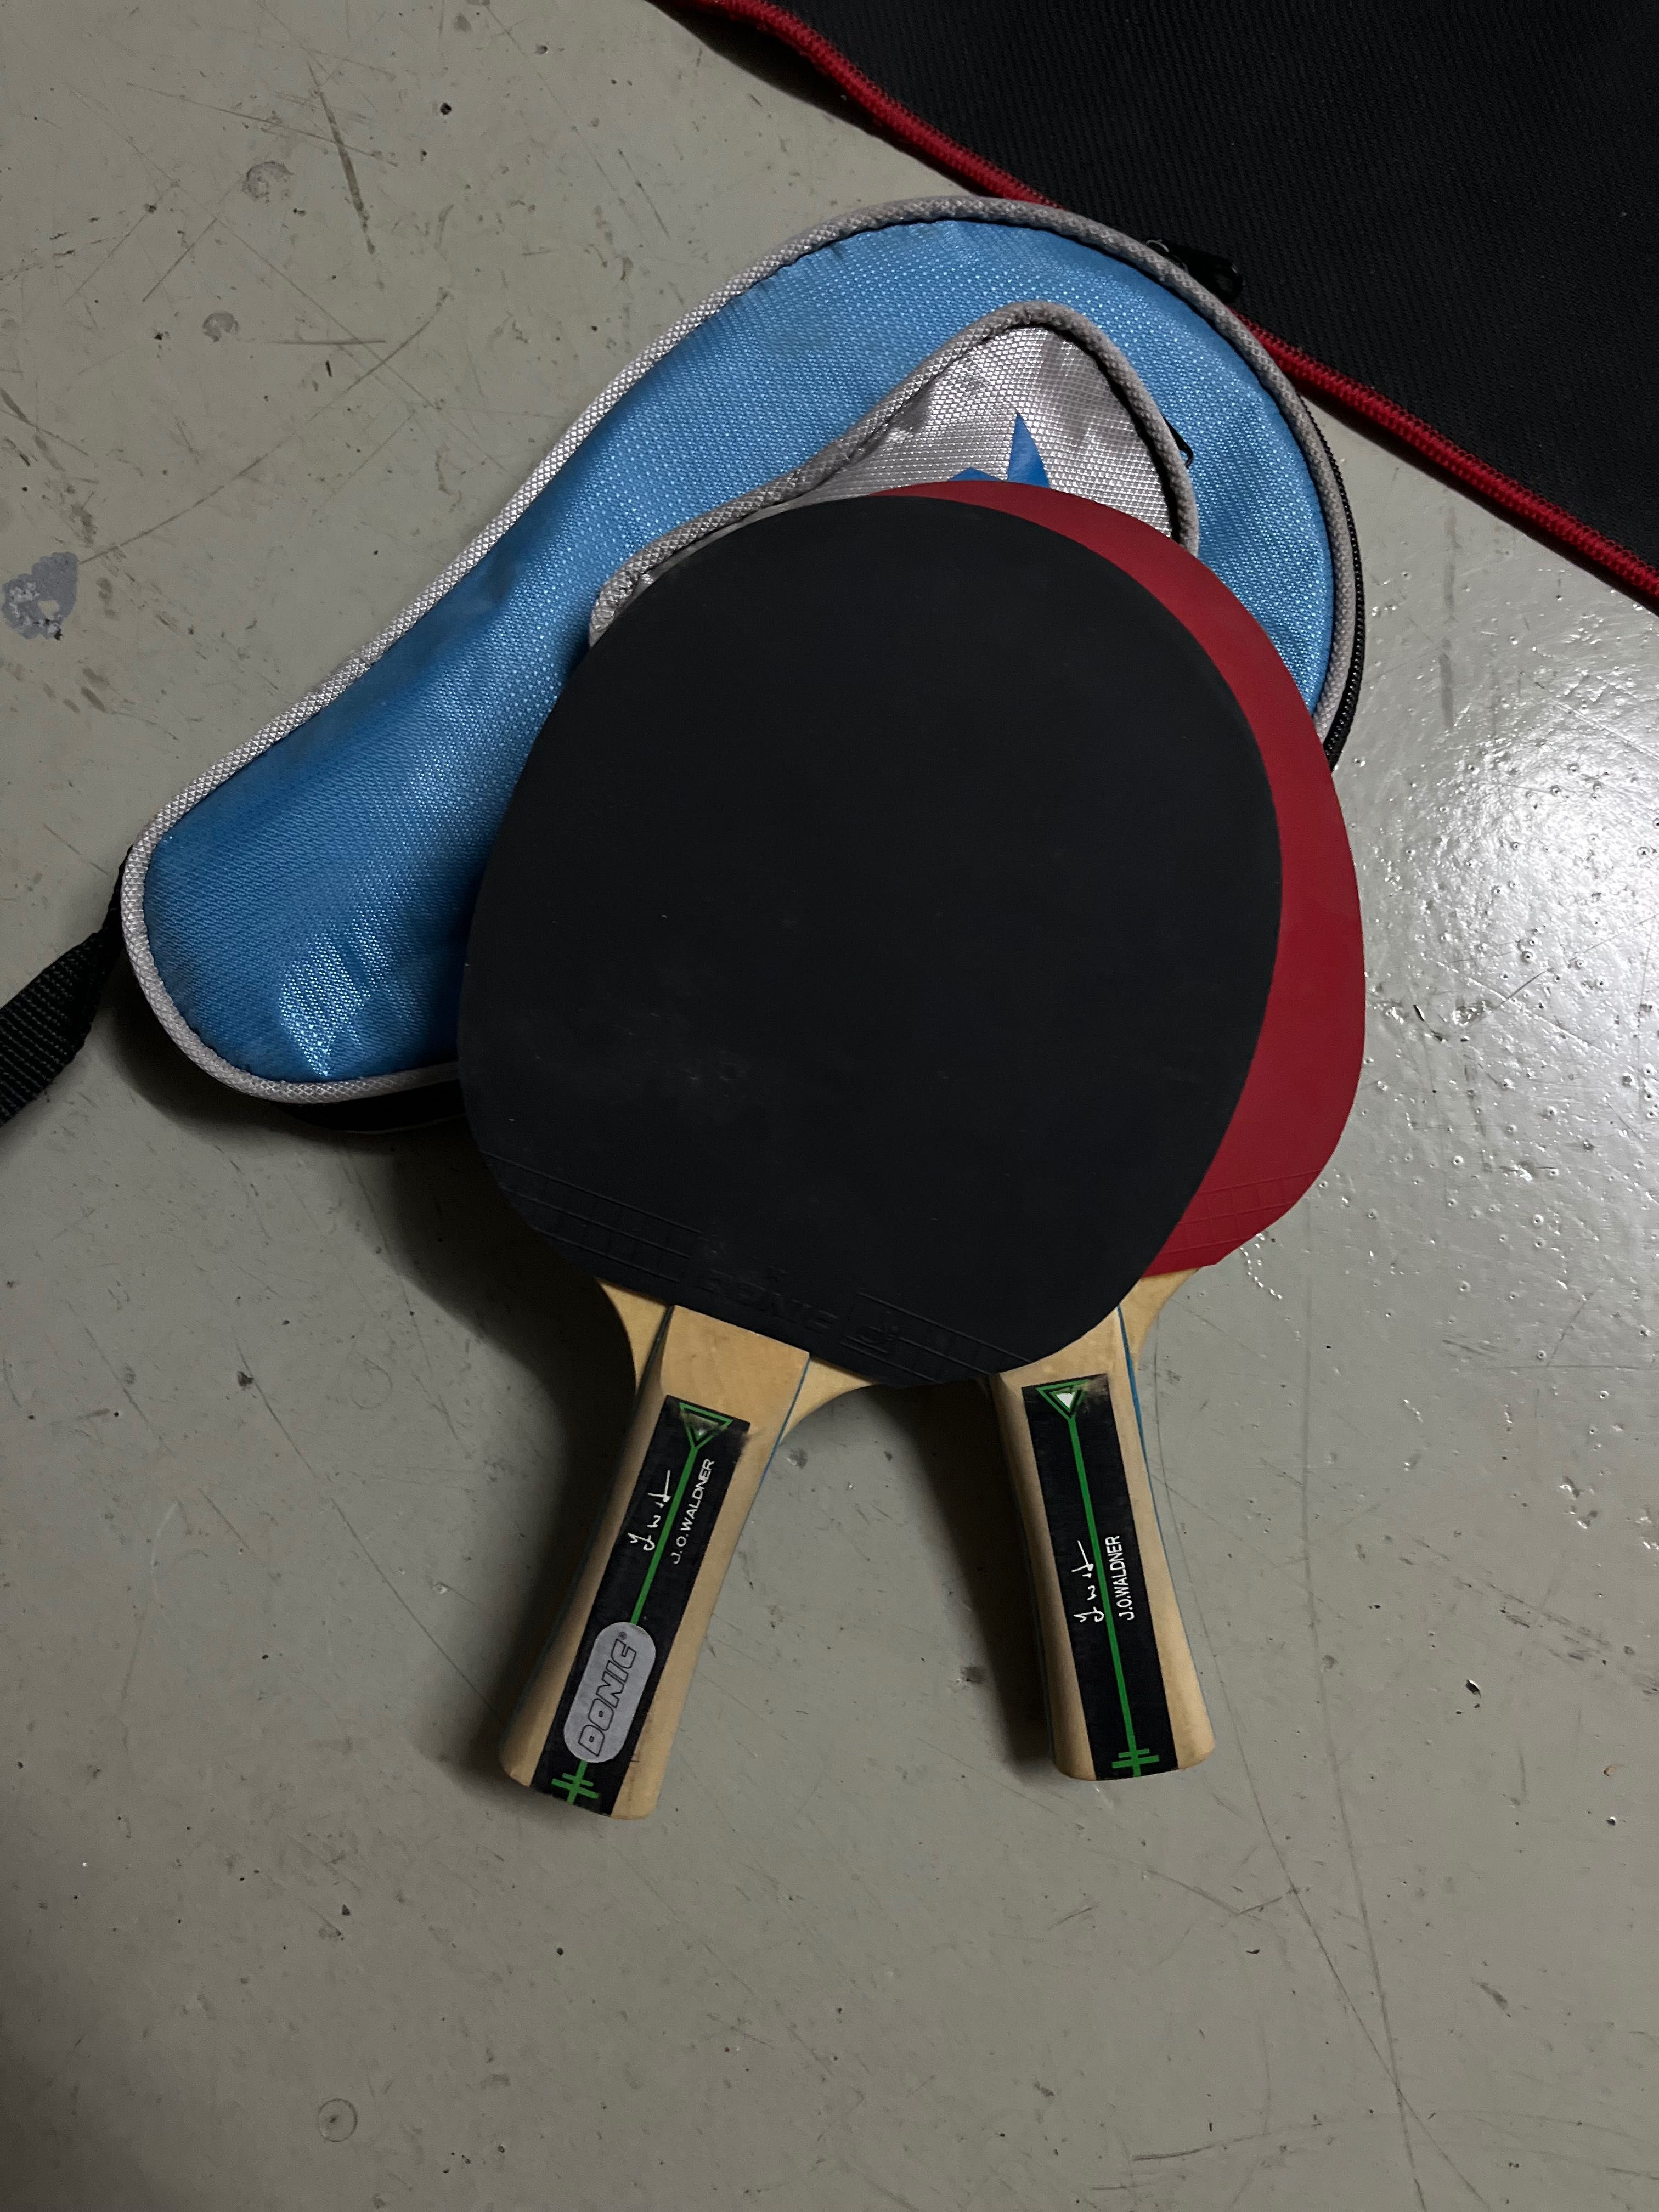 2 raquetes ping pong com bolsa e 3 bolas - em excelente estado!